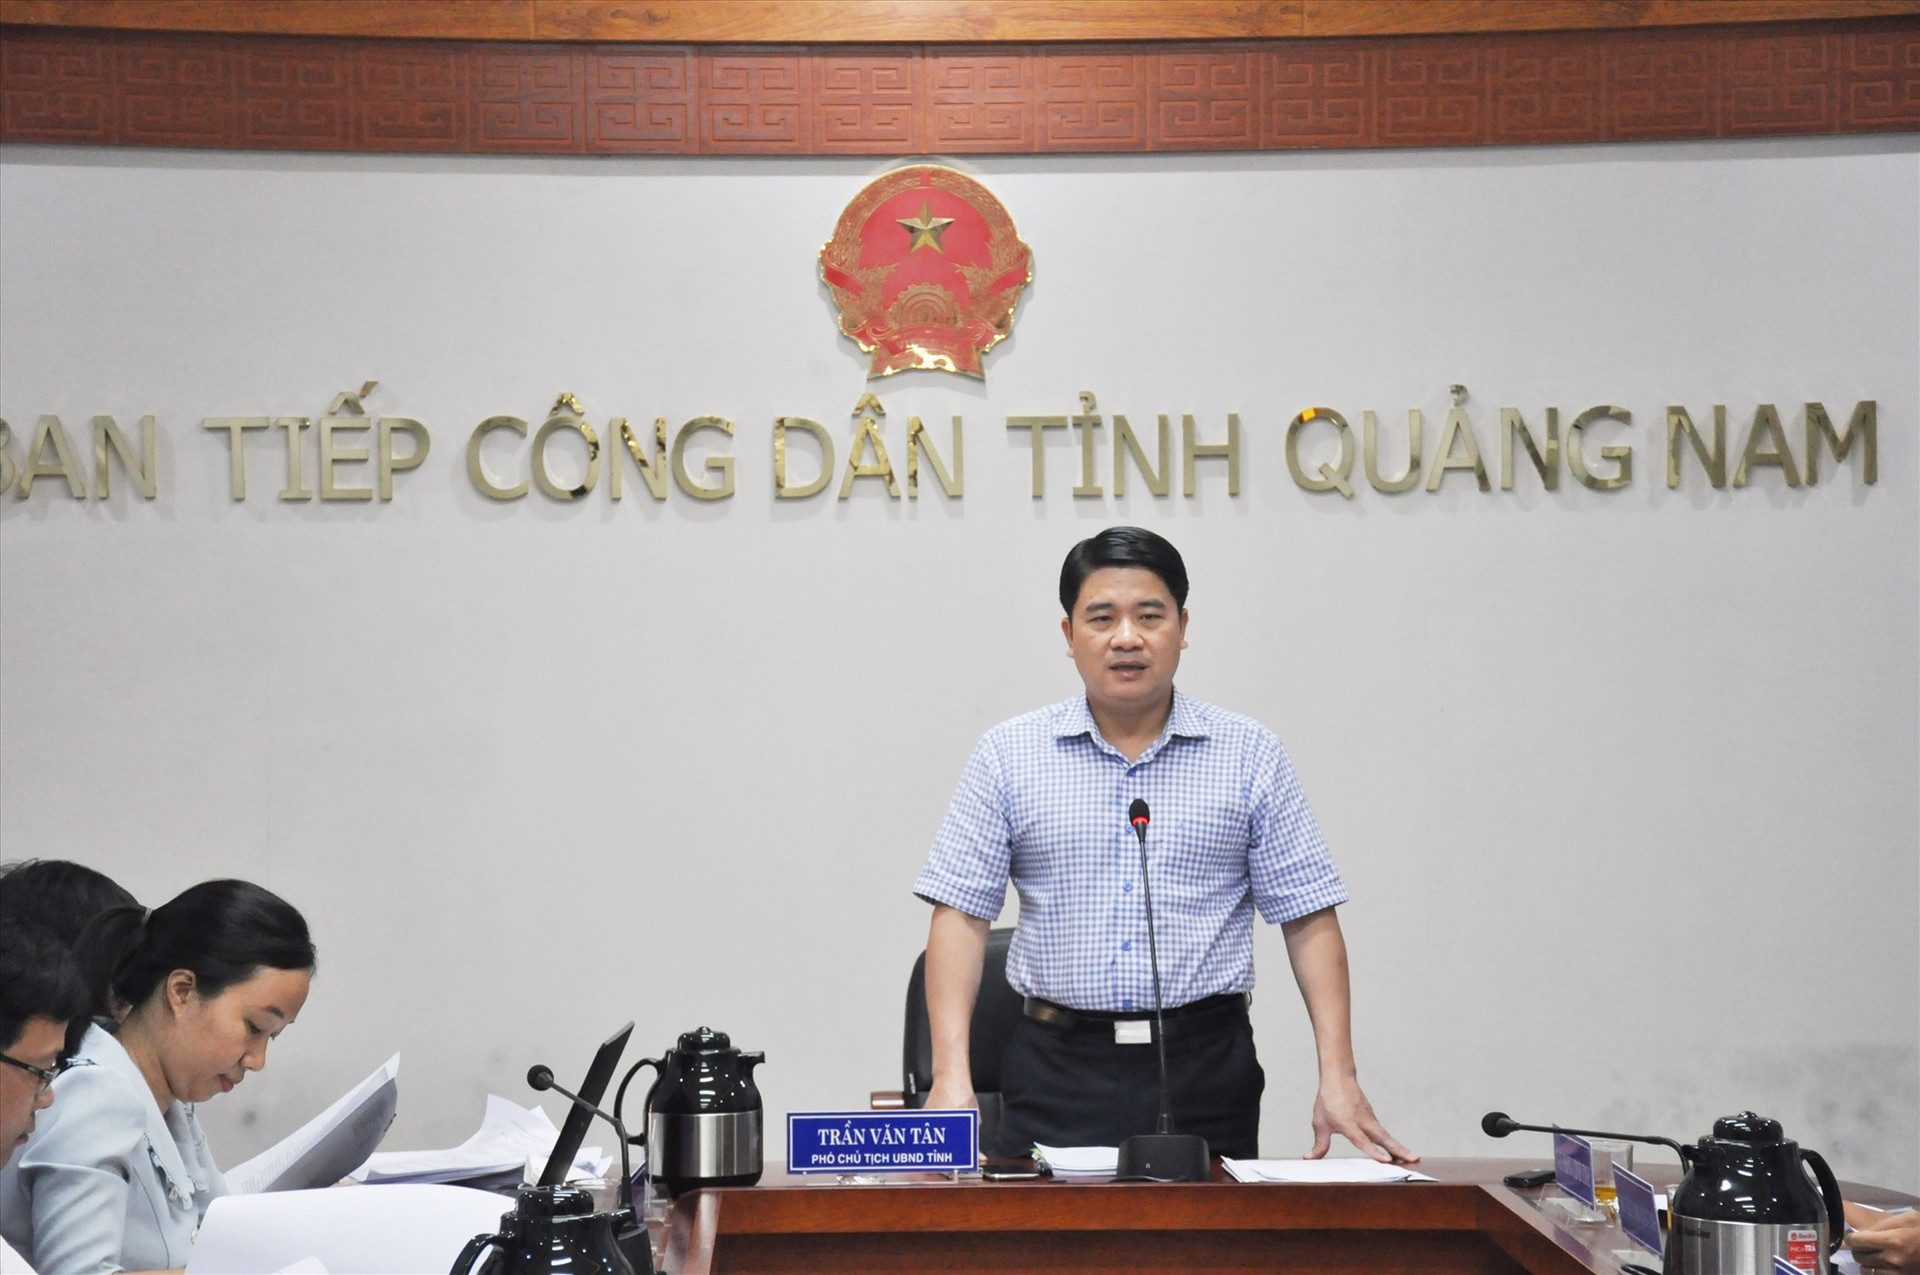 Phó Chủ tịch UBND tỉnh Trần Văn Tân chủ trì buổi tiếp dân định kỳ tháng 6.2022. Ảnh: N.Đ